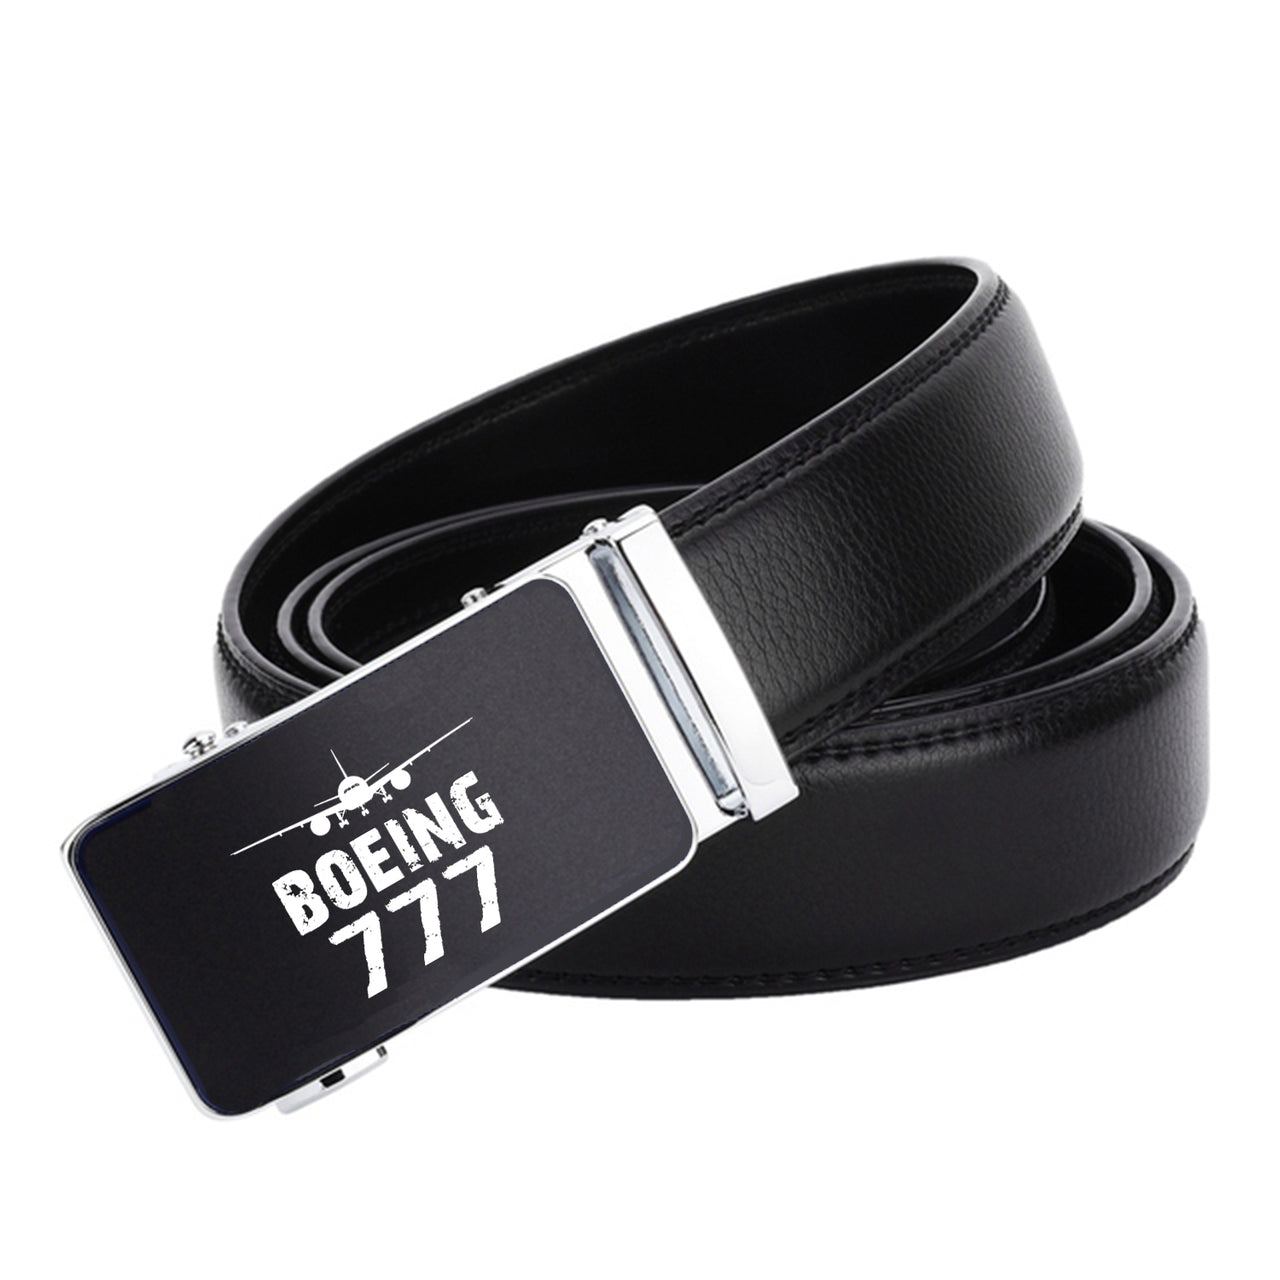 Boeing 777 & Plane Designed Men Belts